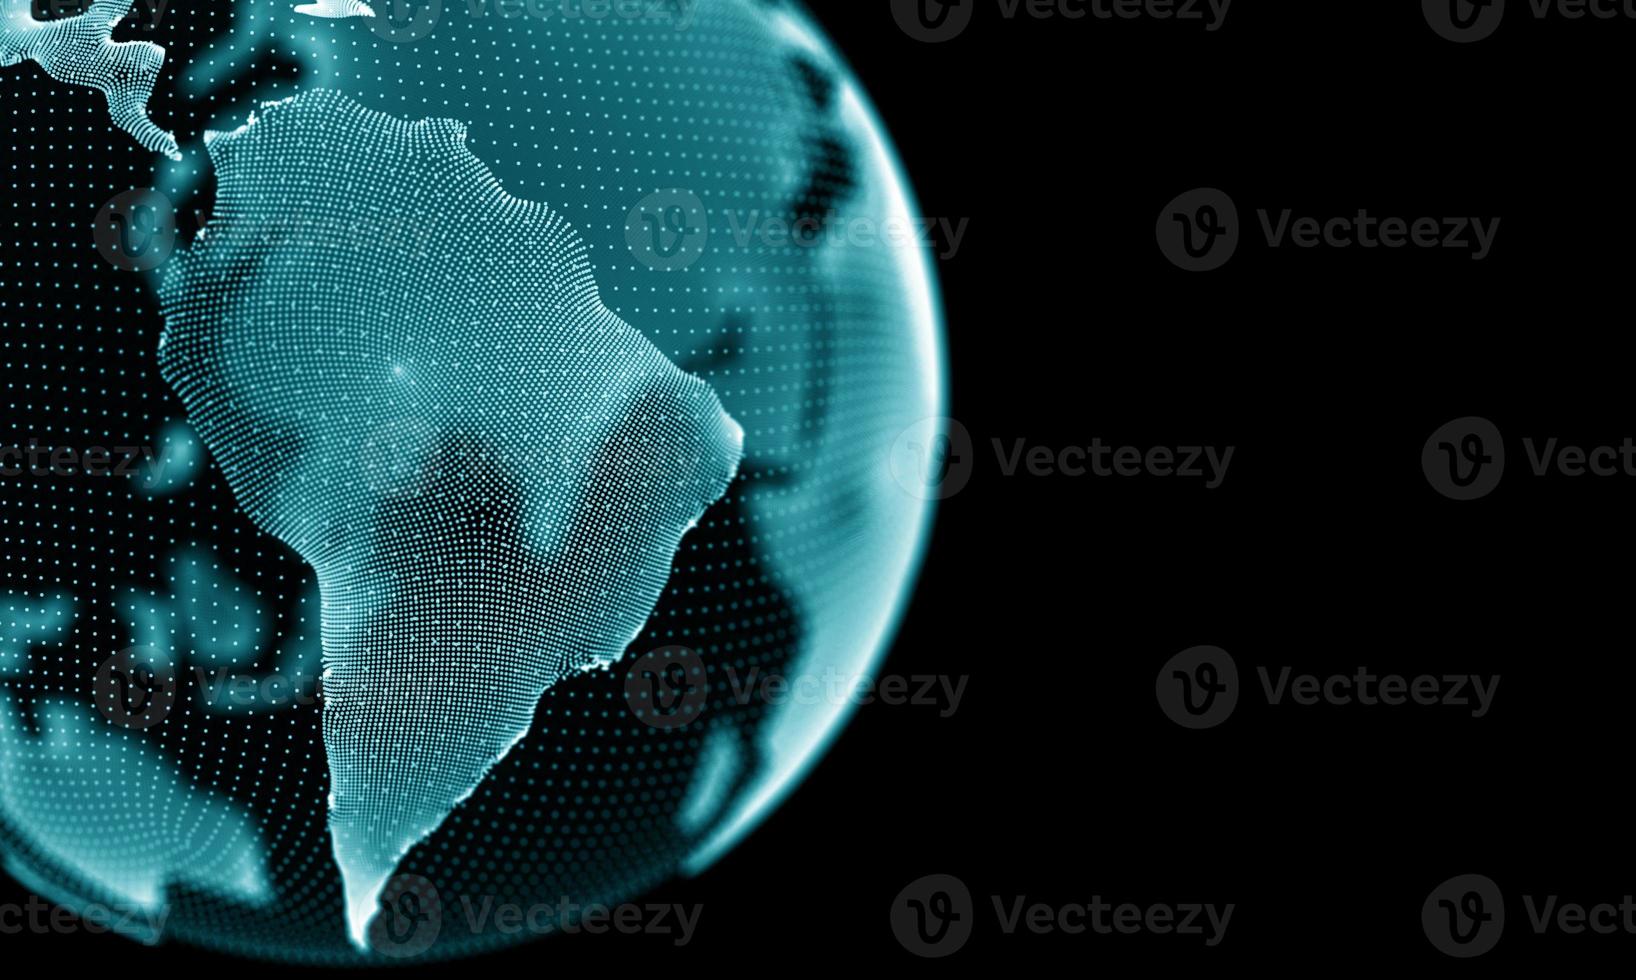 globe numérique 3d. technologie Internet mondiale mondiale. concept de communication abstrait planète. conception de connexion de lumière bleue. carte moderne du réseau de données volumineuses. voyage d'affaires photo